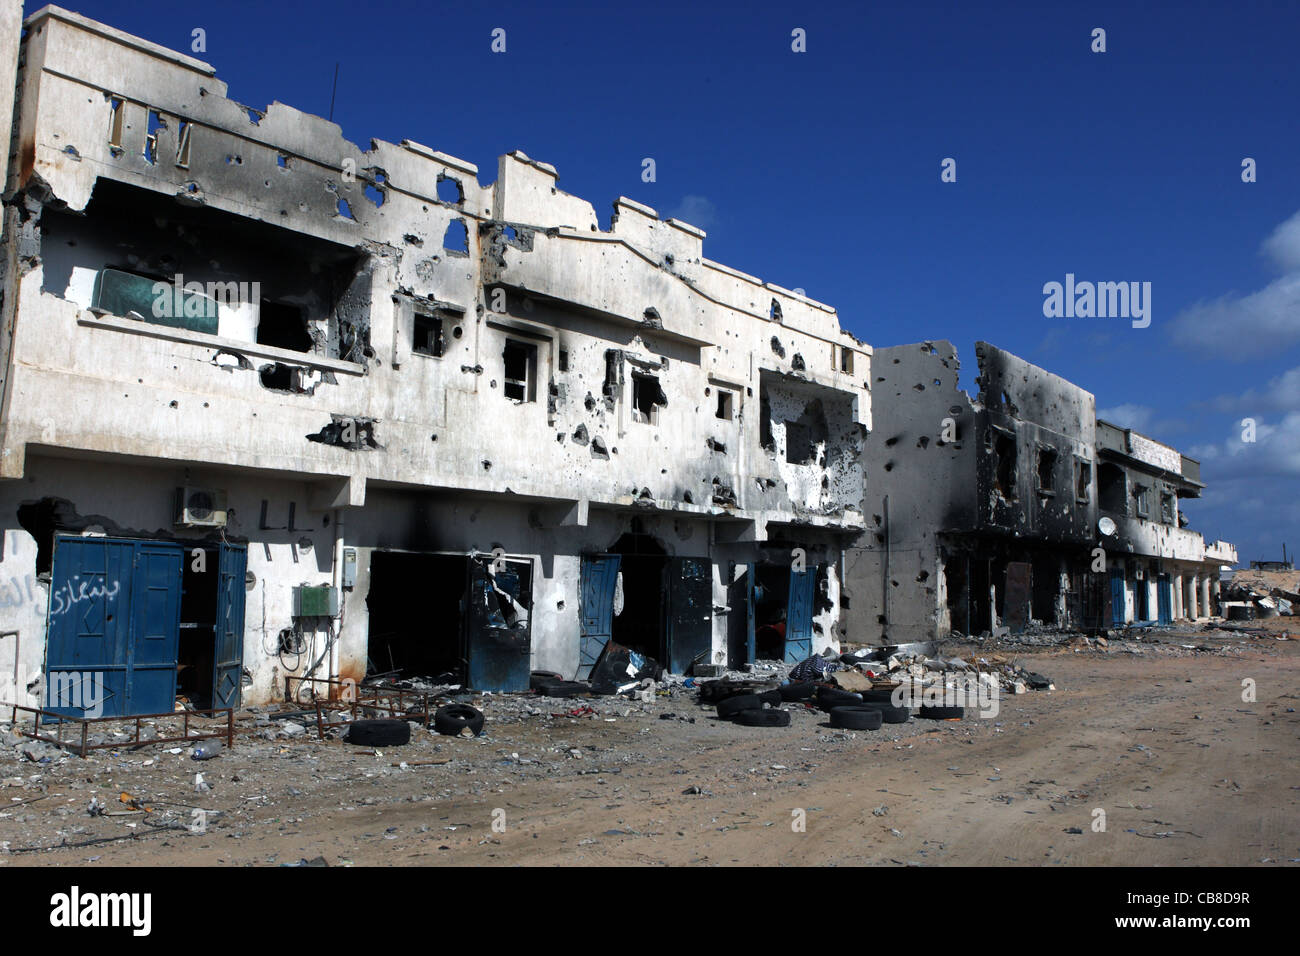 De larges sections de Syrte laissé en ruines après les combats intenses qui ont eu lieu au cours des derniers jours de la révolution libyenne Banque D'Images